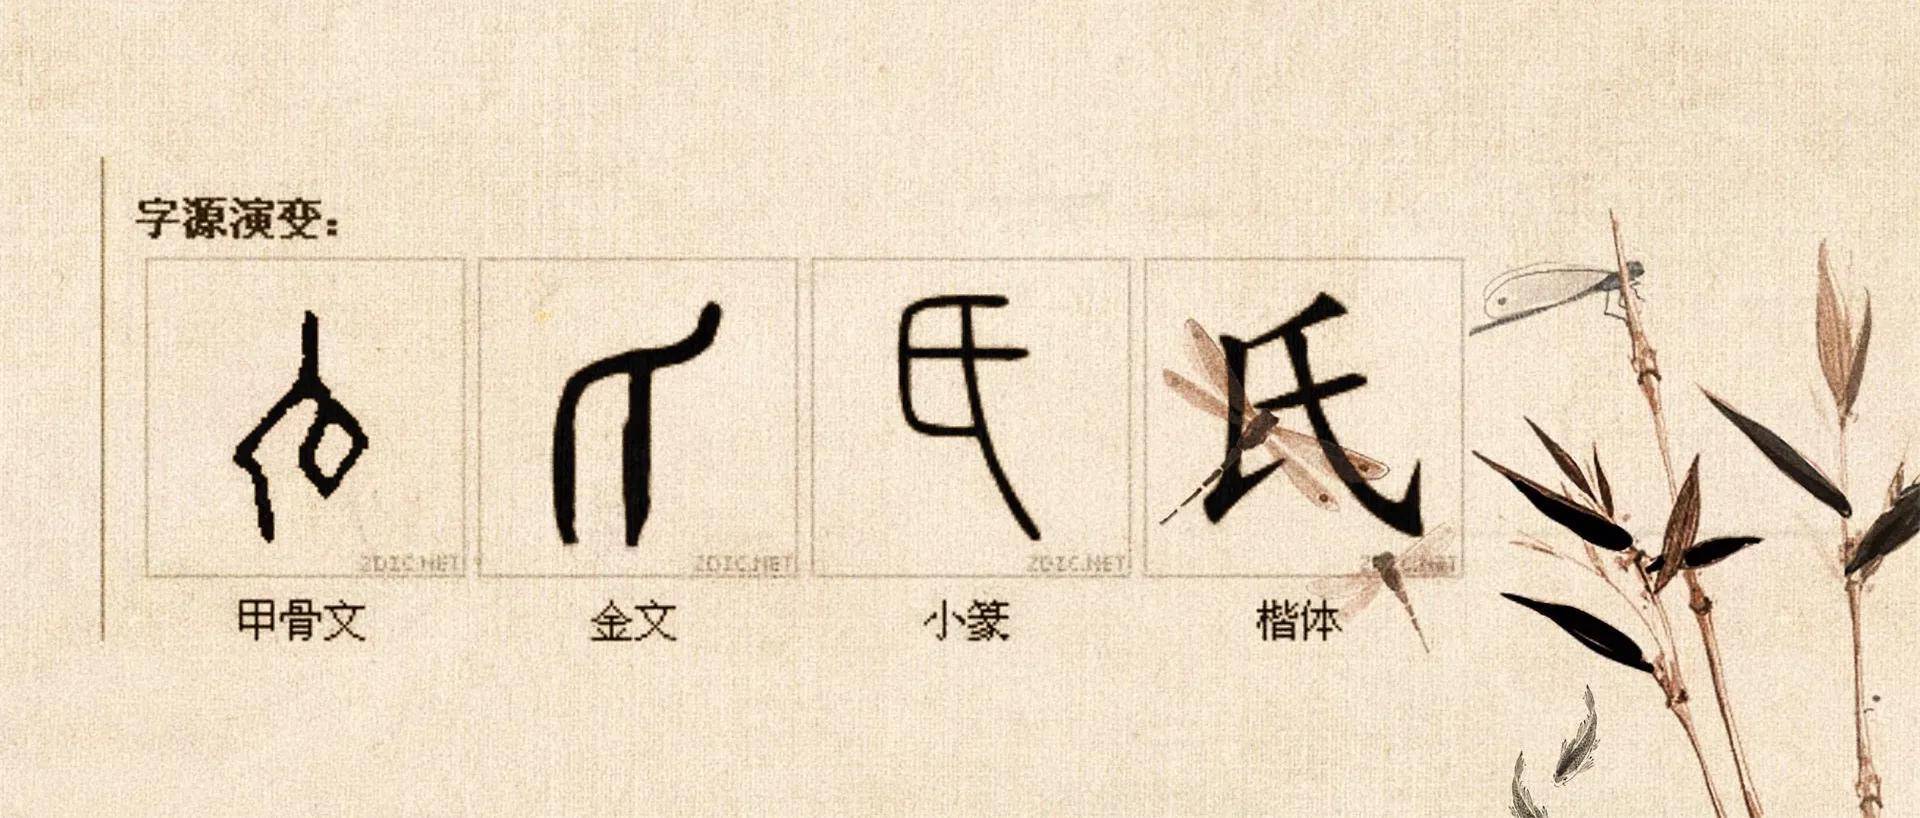 祇读qí,左边的礻表示神灵,右边的氏,它的甲骨文形态像一个人提